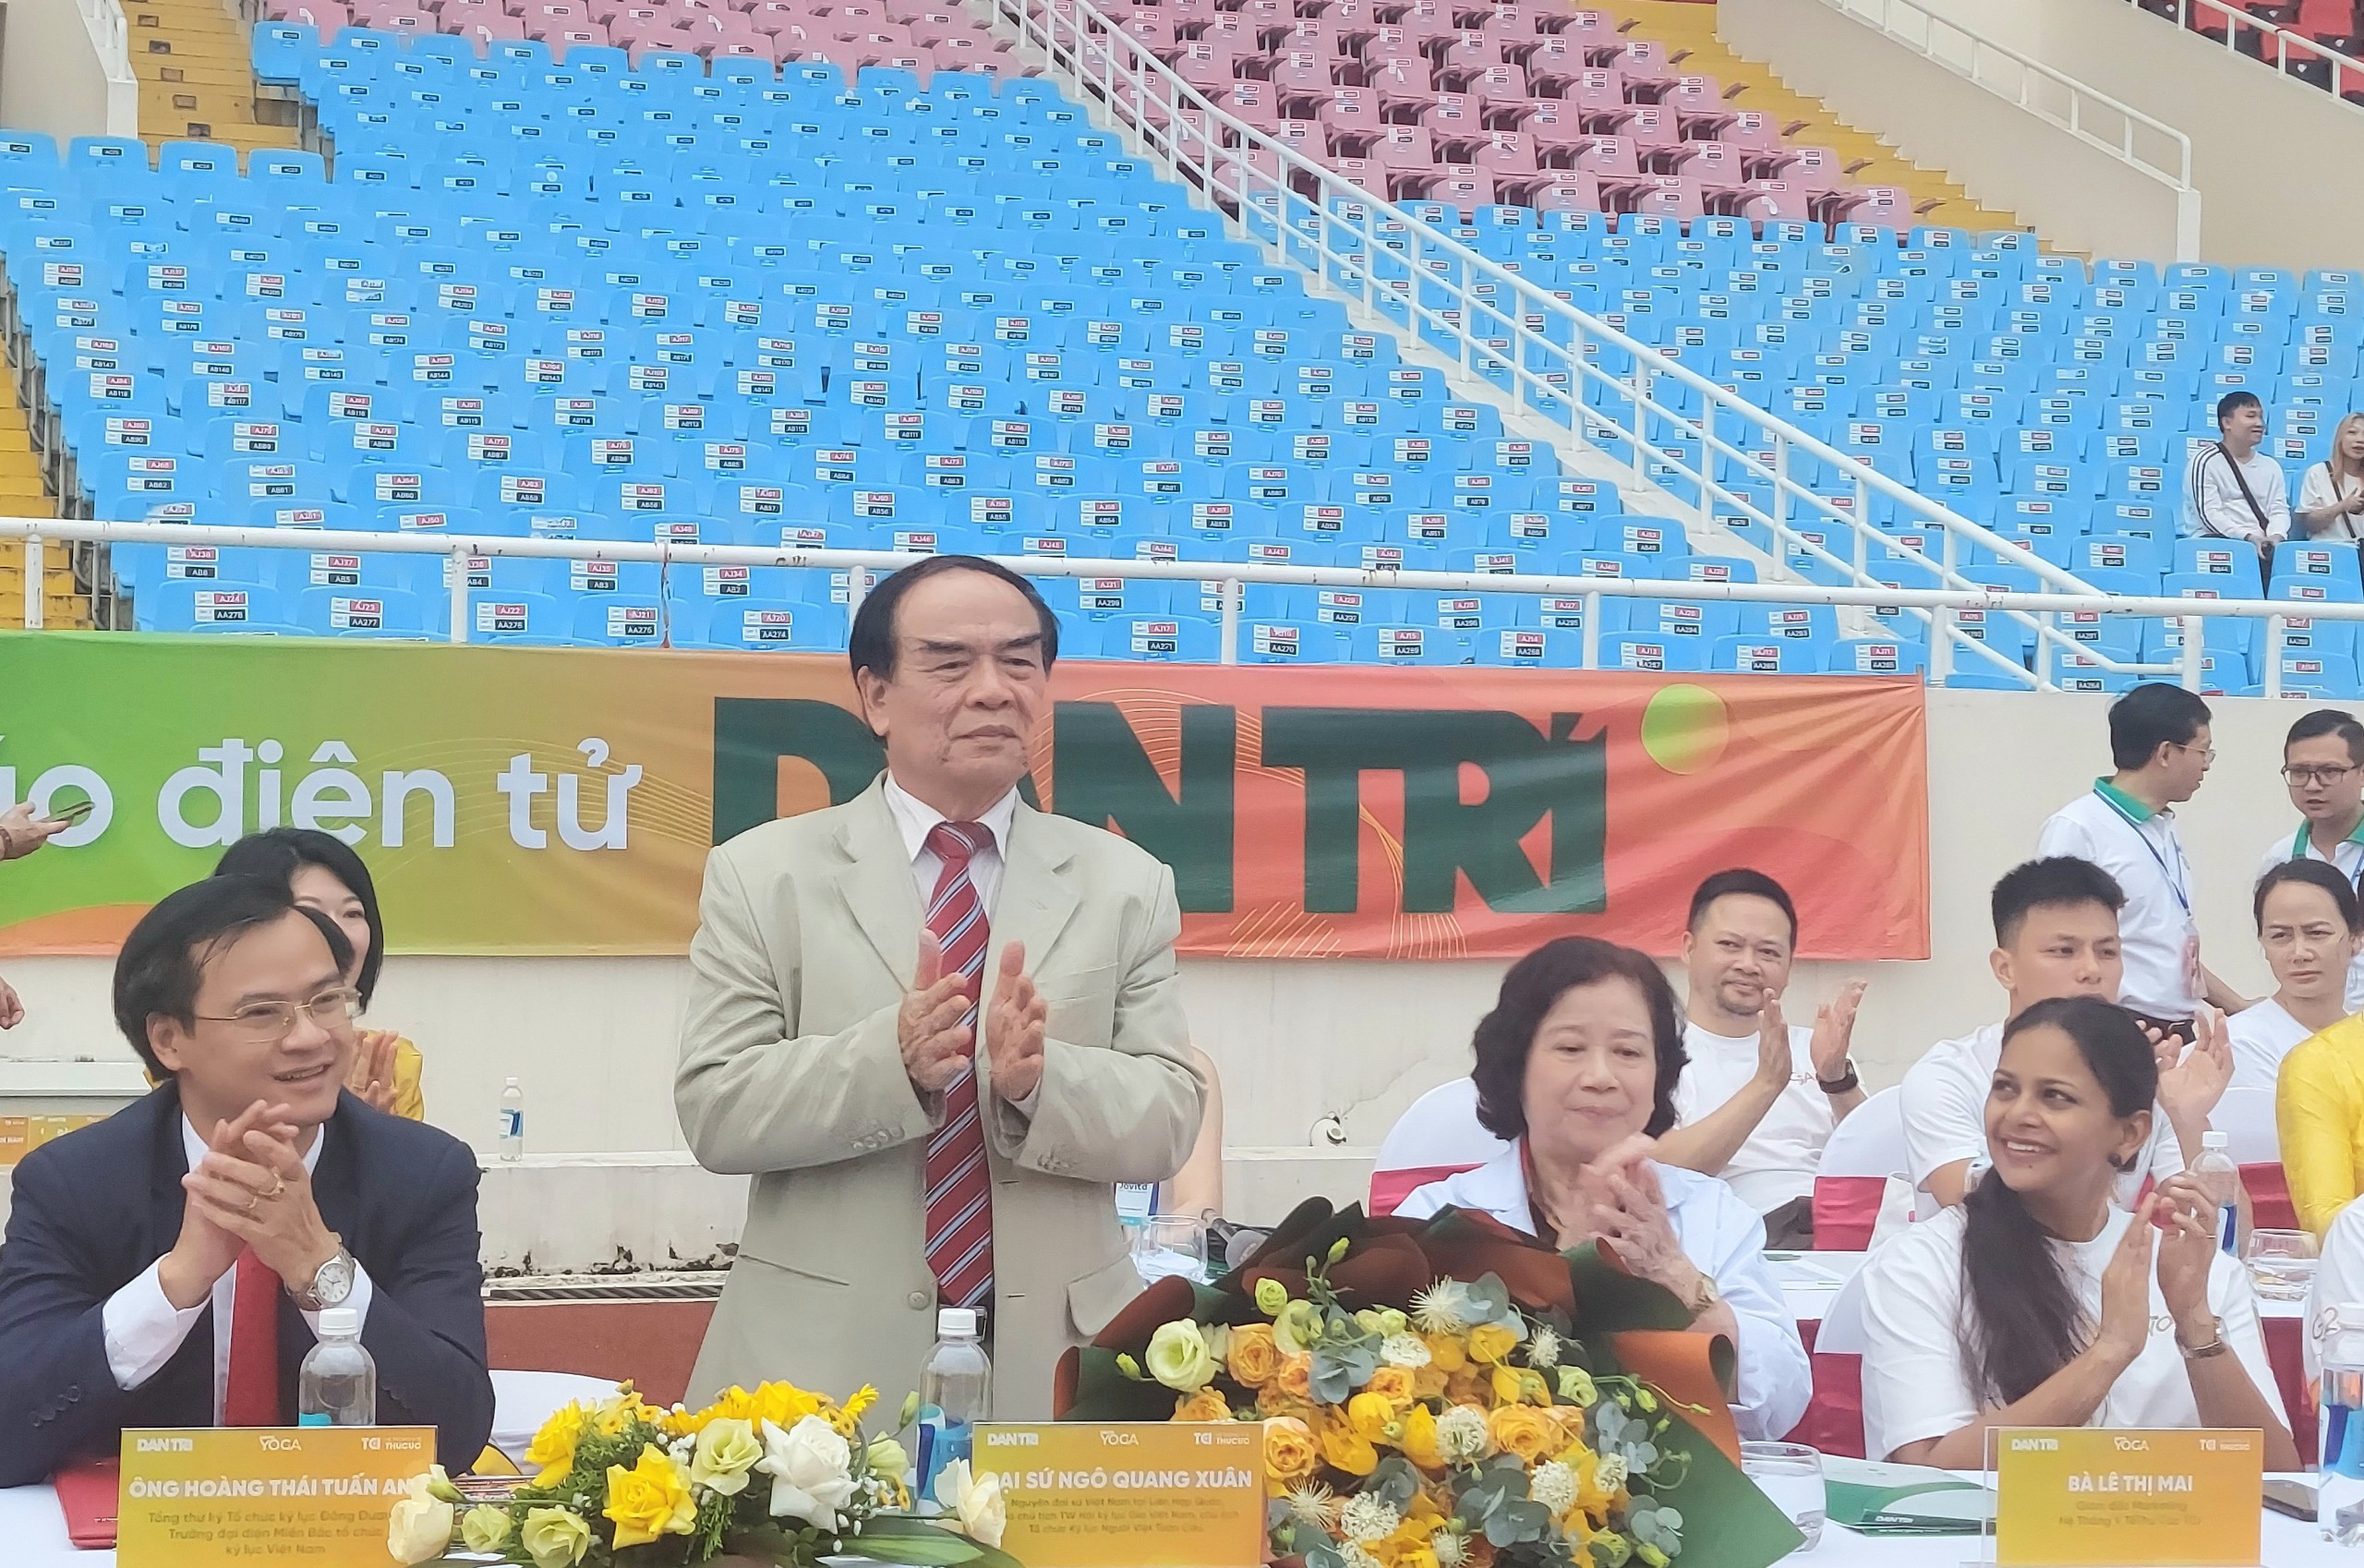 Đại diện Tổ chức Kỷ lục Việt Nam (VietKings) tại sự kiện. (Ảnh: VietKings)